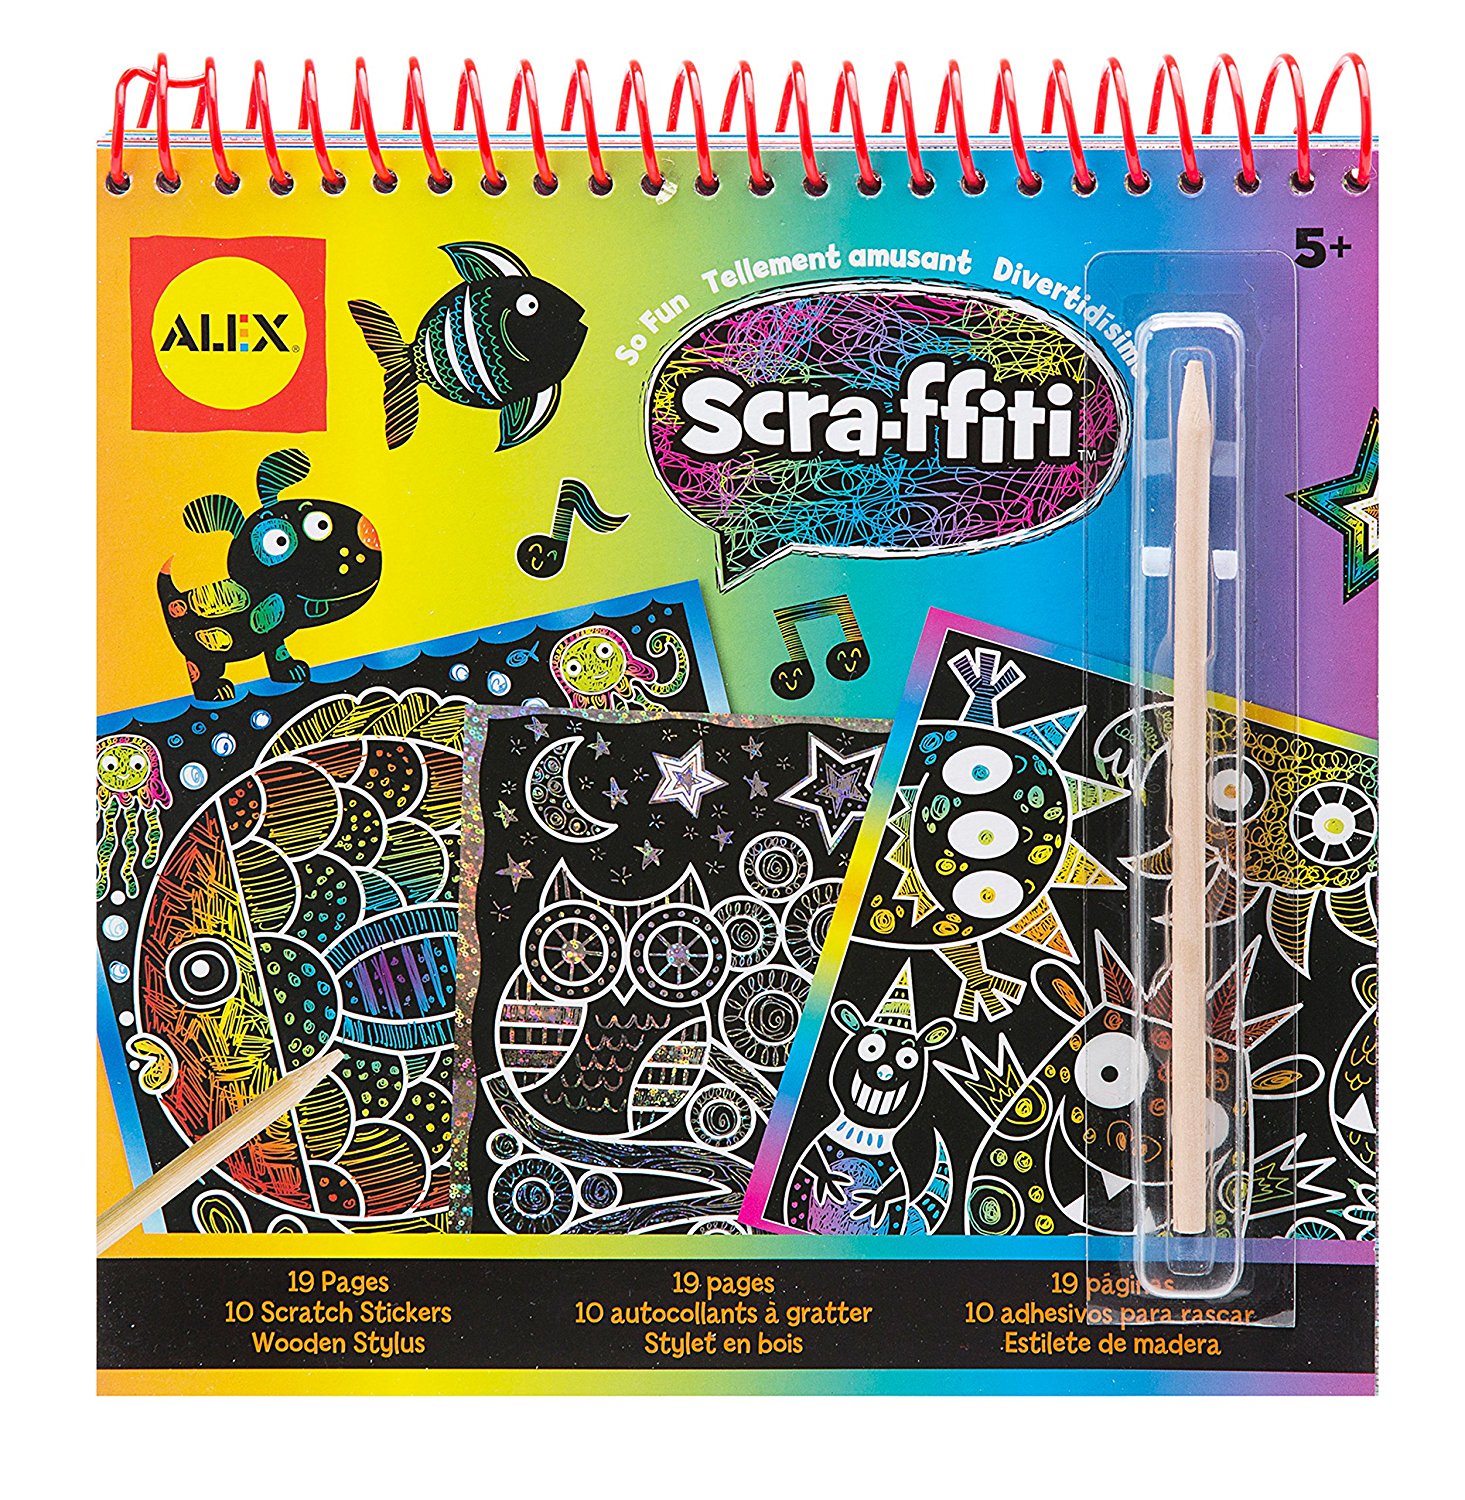 ALEX Scra-ffiti So Fun Scratch Pad Coloring and Sketch Book Only $6.77!